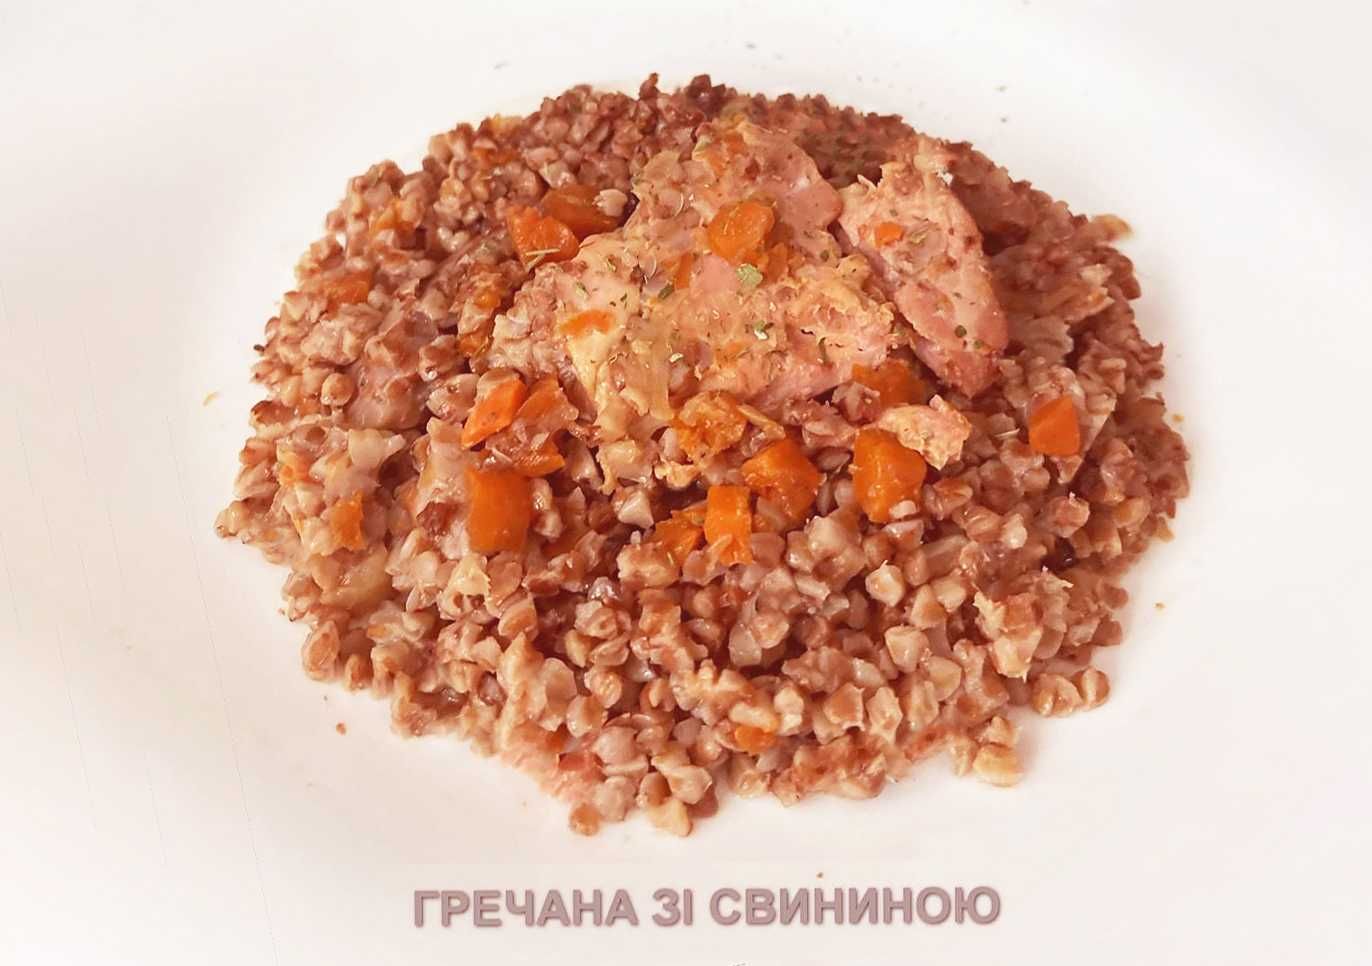 Сухой паек суточный Украины/ Украинский сухпай / Пайок